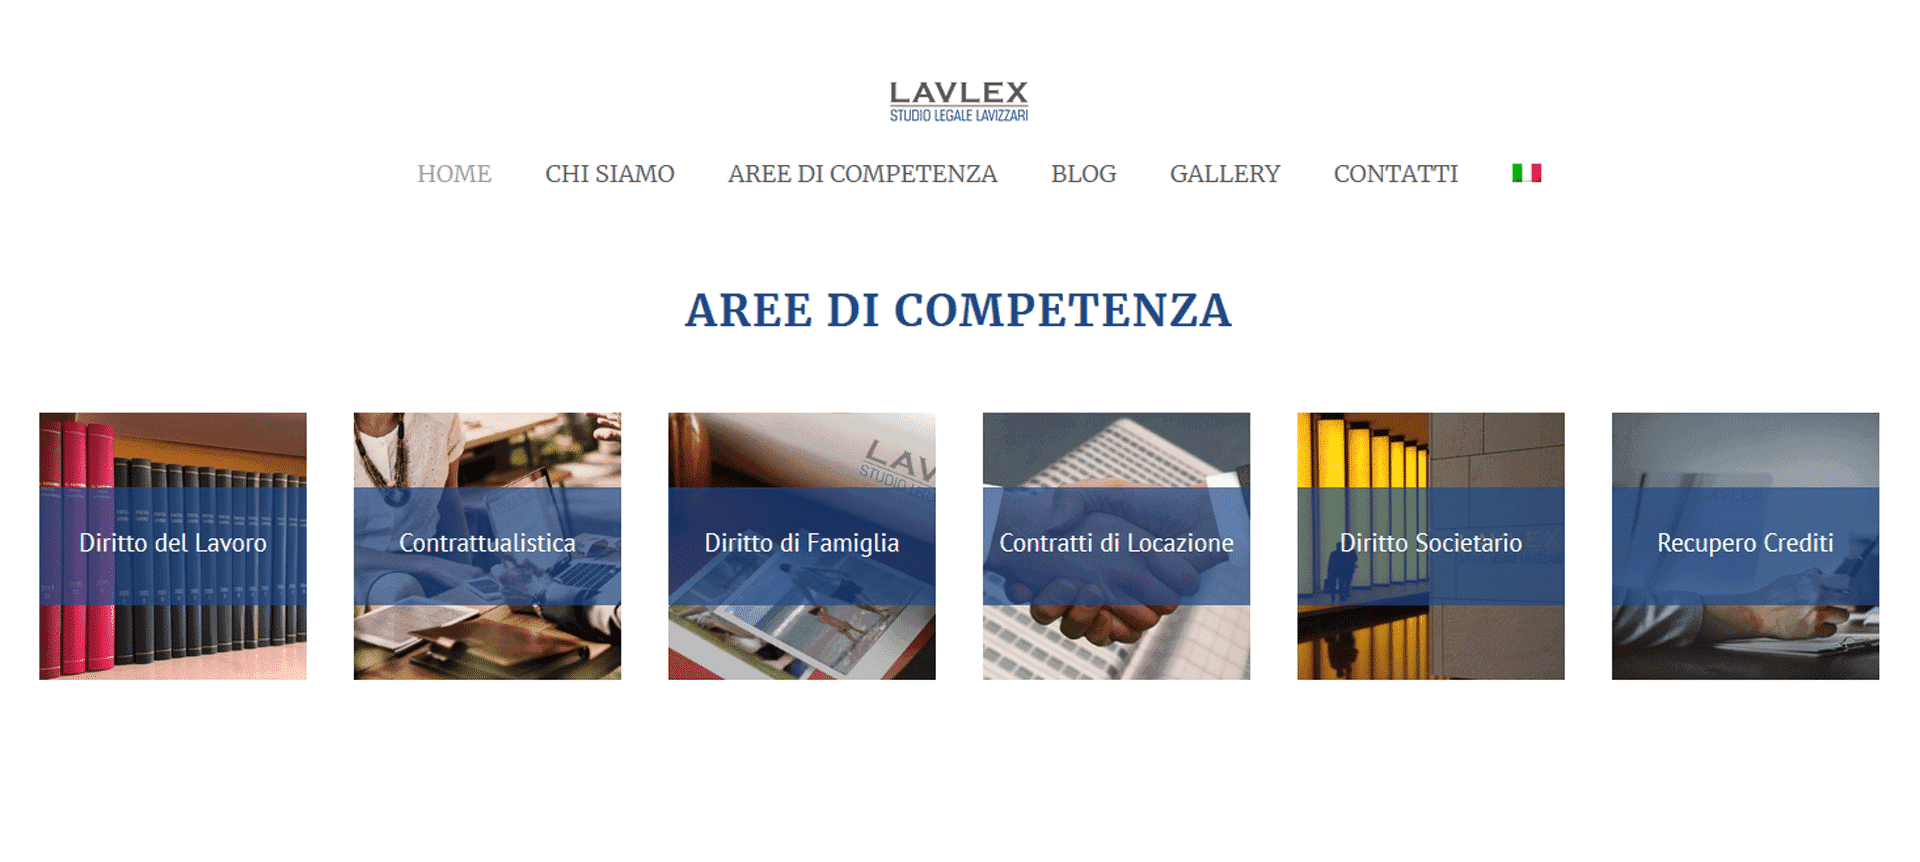 Lavlex Studio Legale Lavizzari Portfolio Digital Compass Aree di Competenza